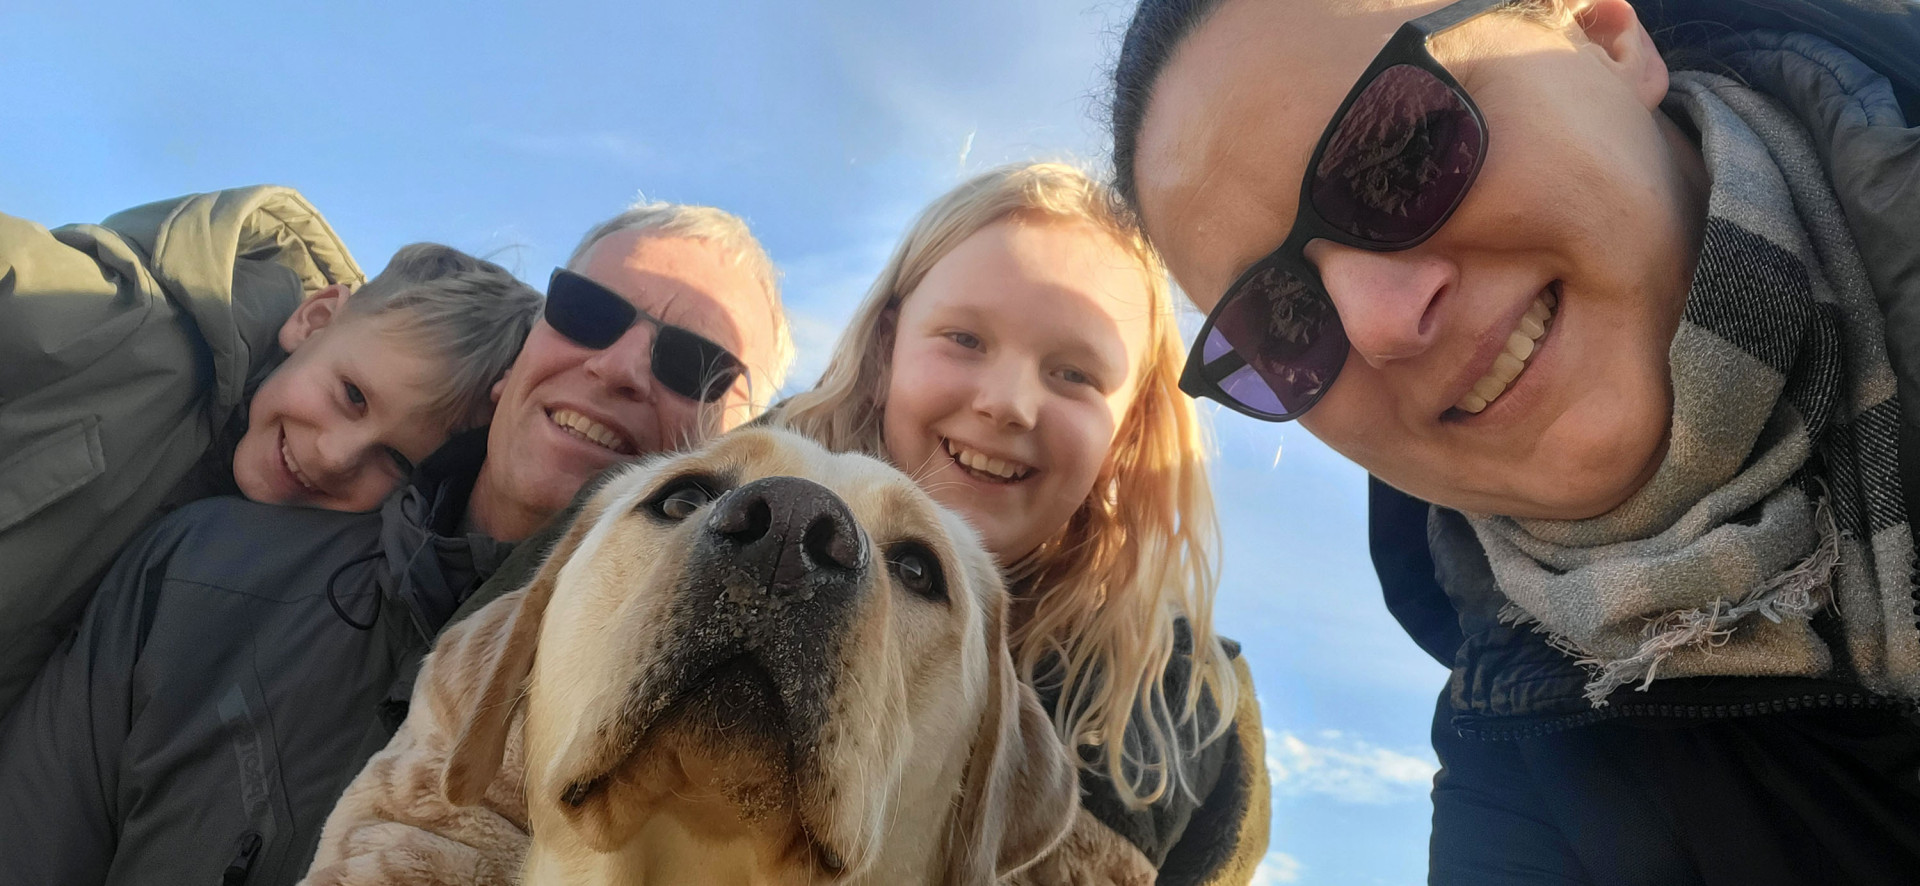 Zonnige groepsfoto van het gezin met de blonde hond.